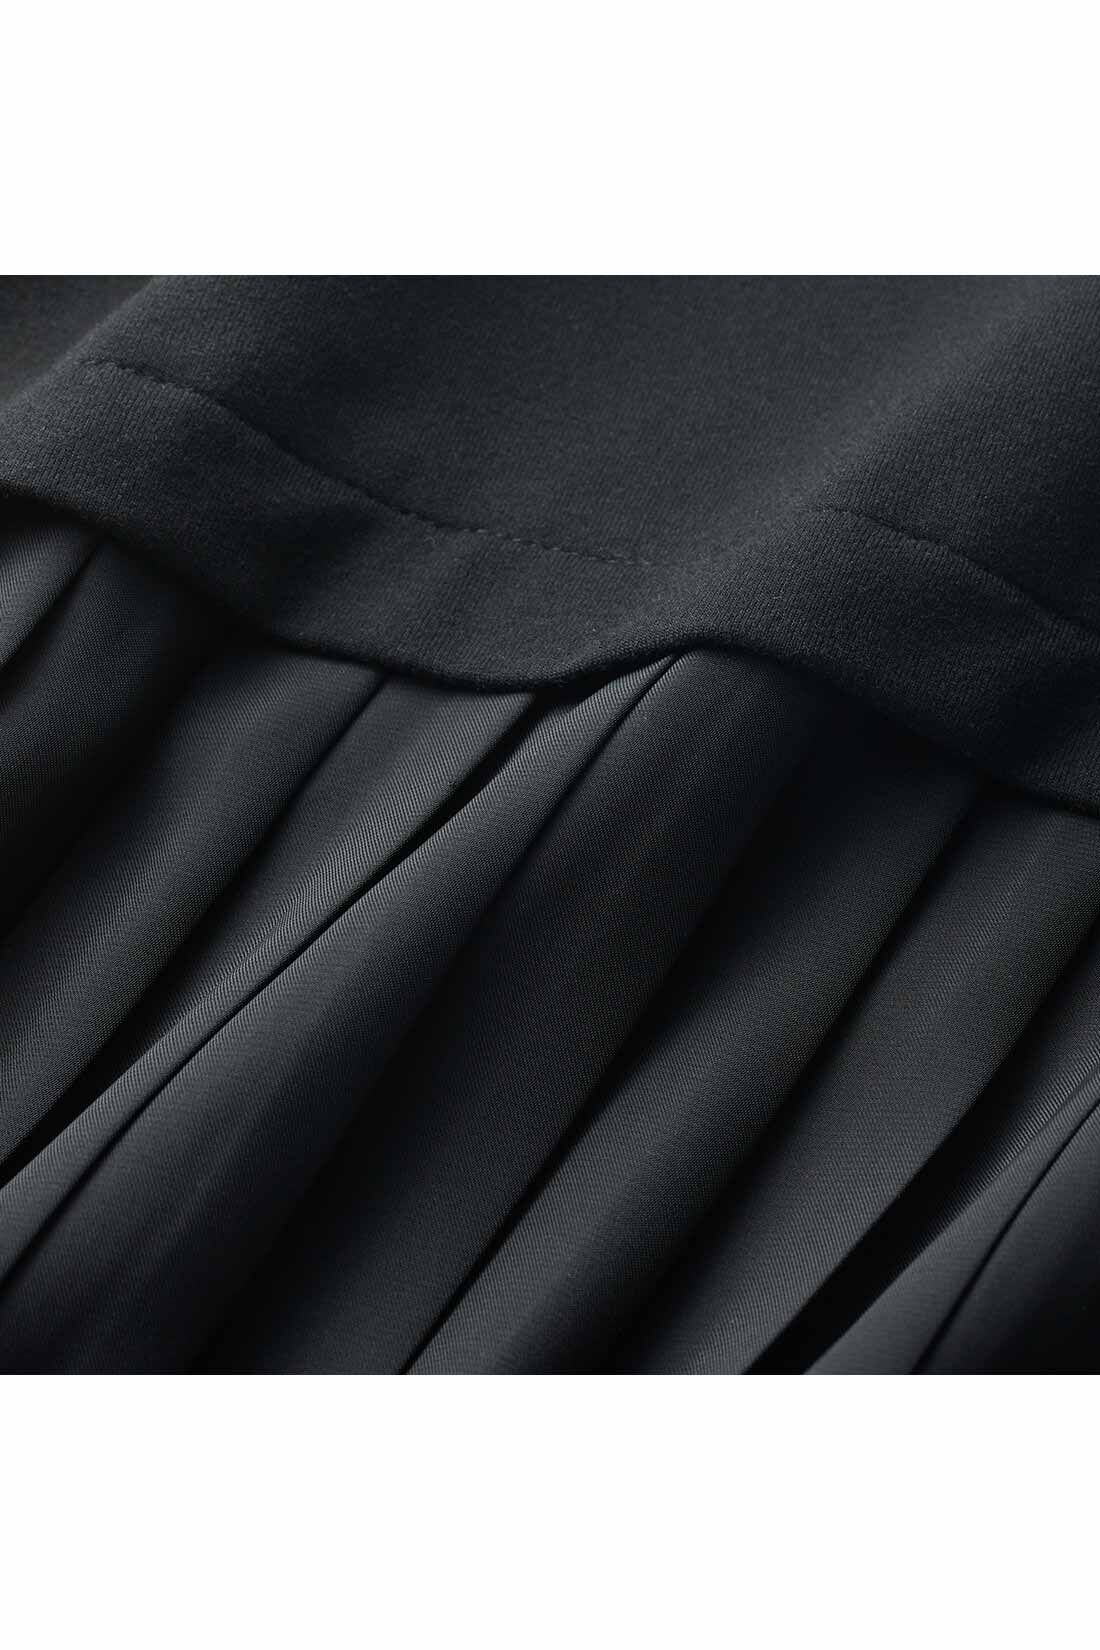 IEDIT|IEDIT[イディット]　バックプリーツで着映えする ひんやり接触冷感が気持ちいい カットソーセットアップ〈ブラック〉|背中にはサテン素材のプリーツをドッキングして華やかさをプラス。黒一色でも単調にならず、後ろ姿も印象的に。